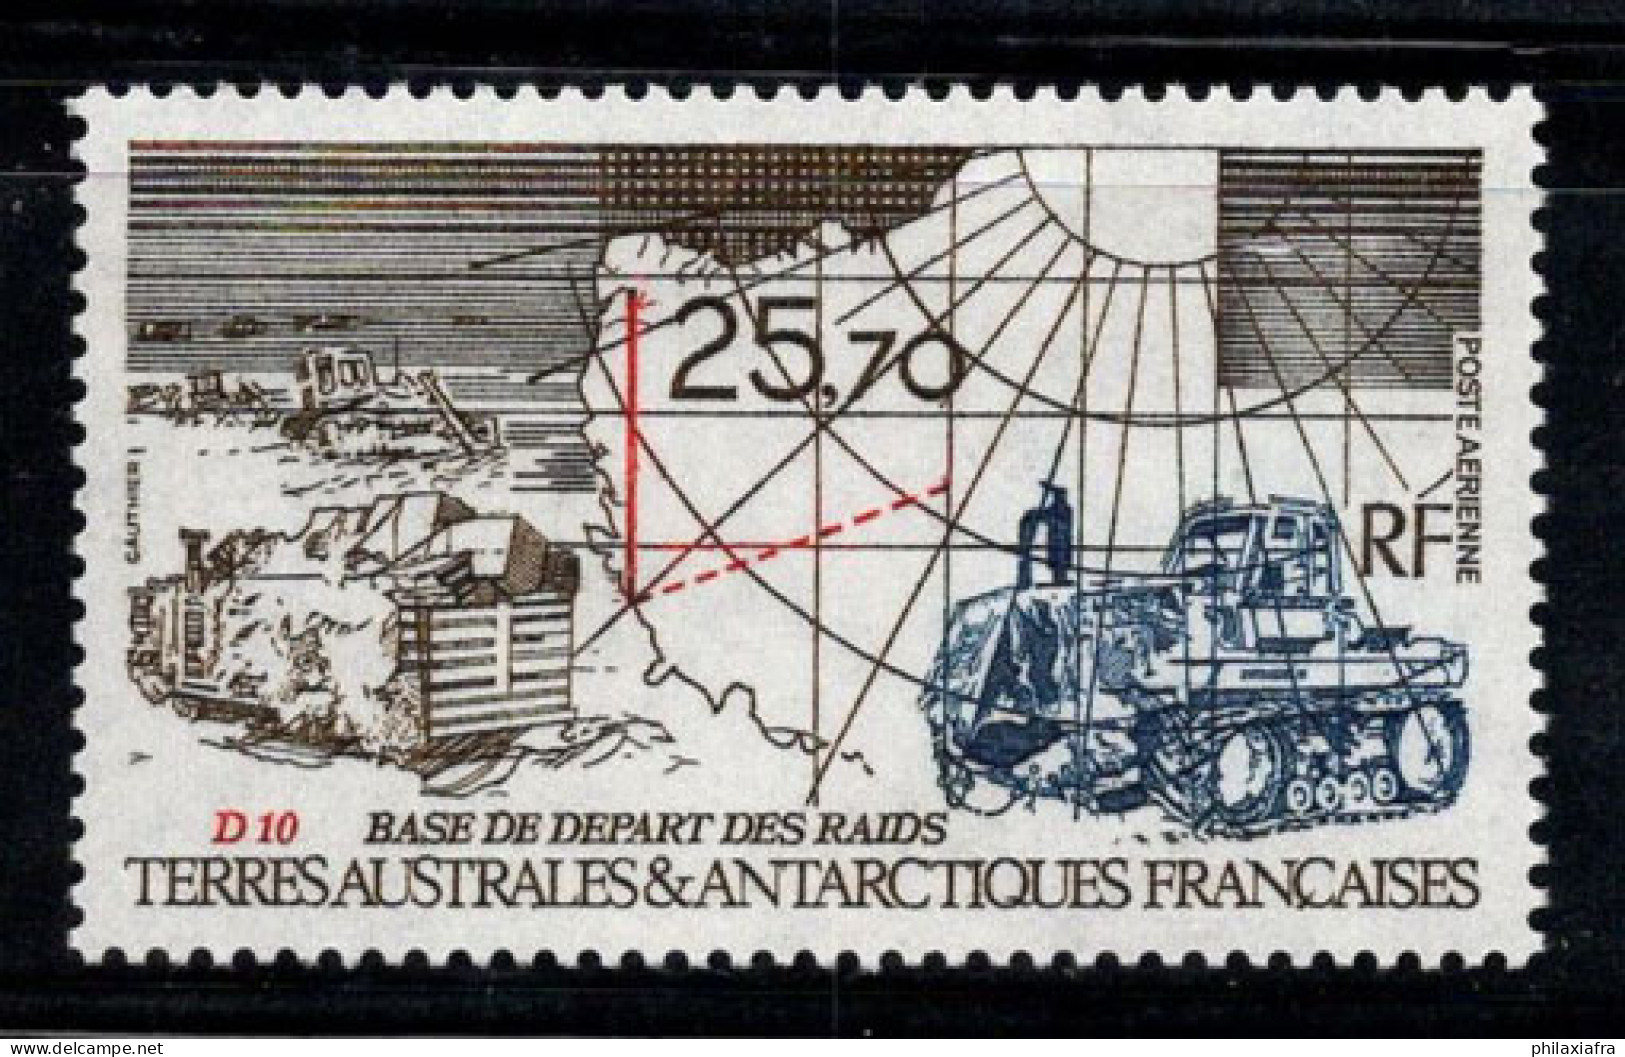 Territoire Antarctique Français TAAF 1993 Mi. 310 Neuf ** 100% Poste Aérienne 25.70 (Fr), Véhicule à Chenilles, Base D10 - Unused Stamps